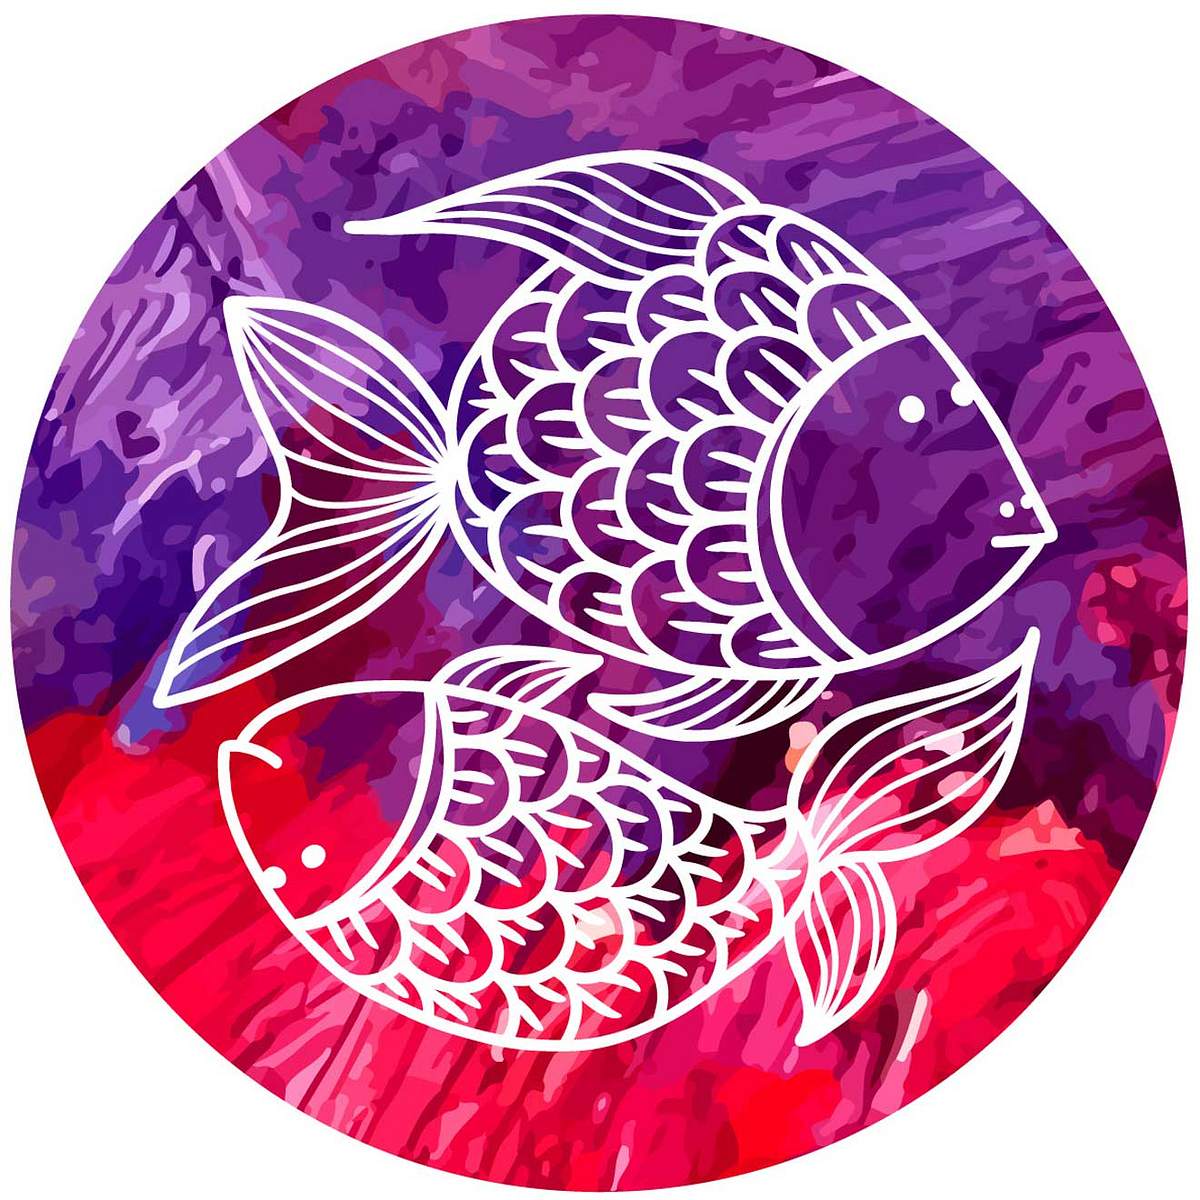 Horoskop: Diese Sternzeichen sind dein schlimmster Feind Fische